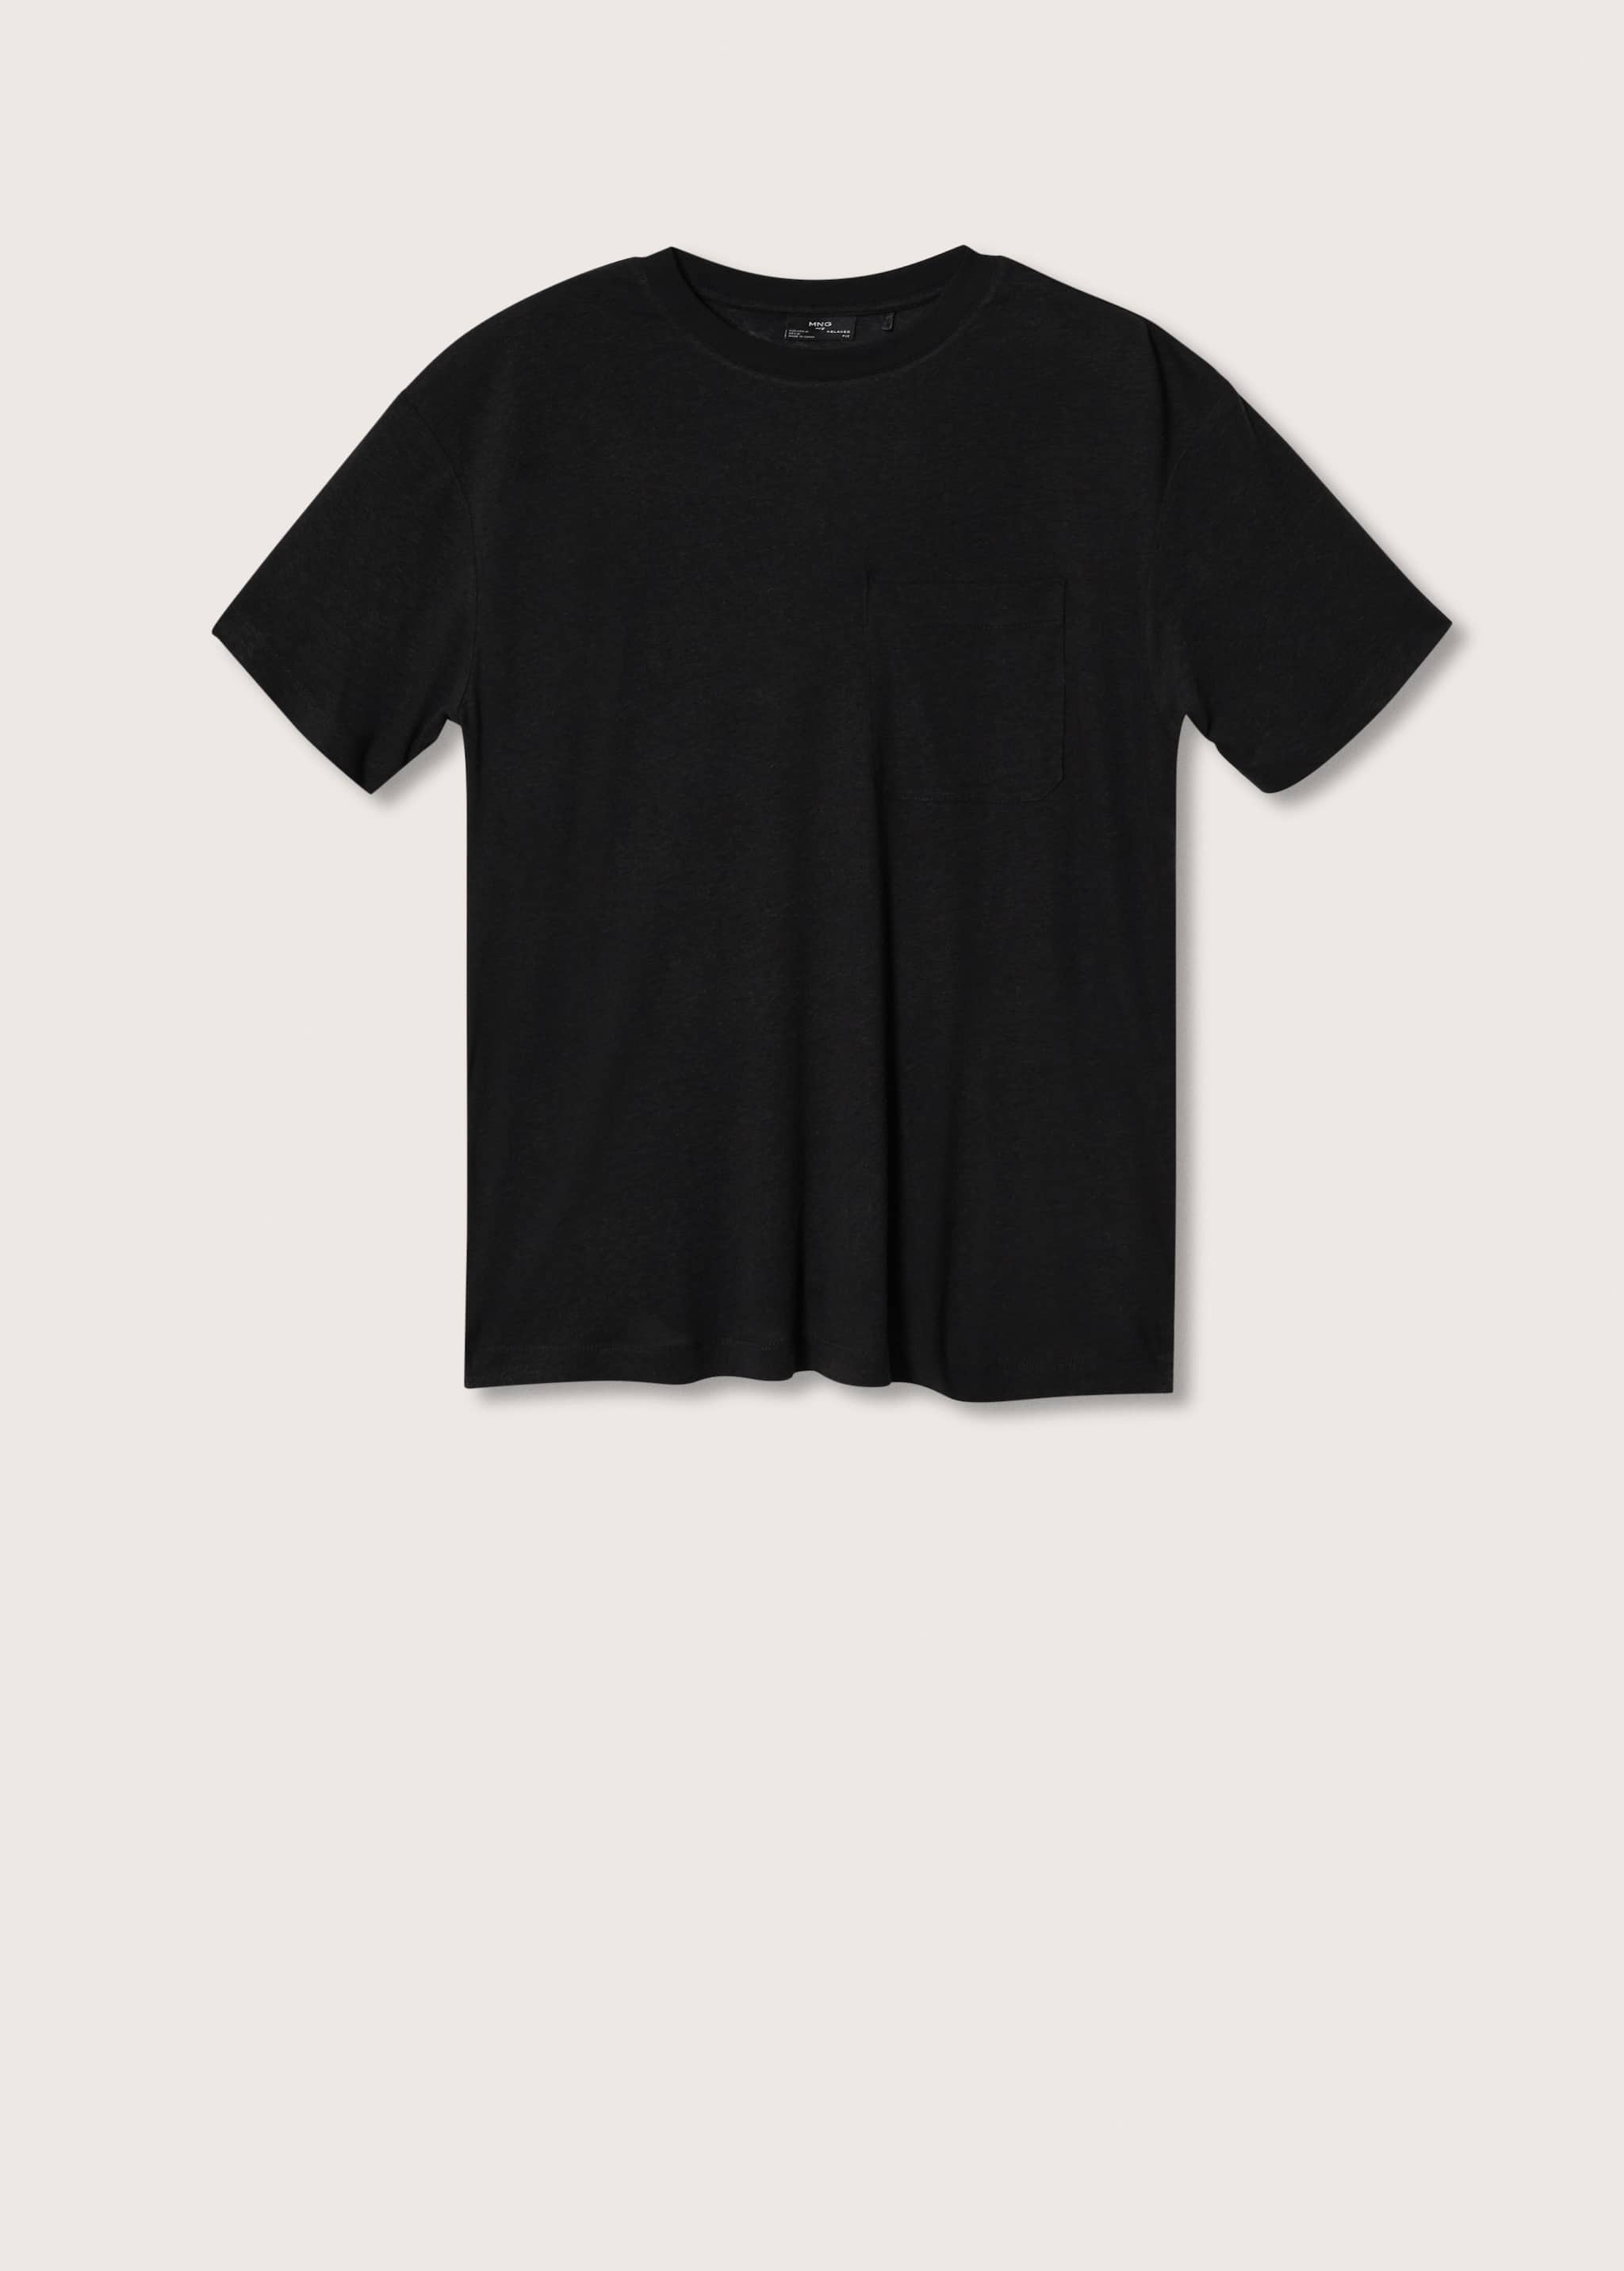 Camiseta fluida lino - Artículo sin modelo